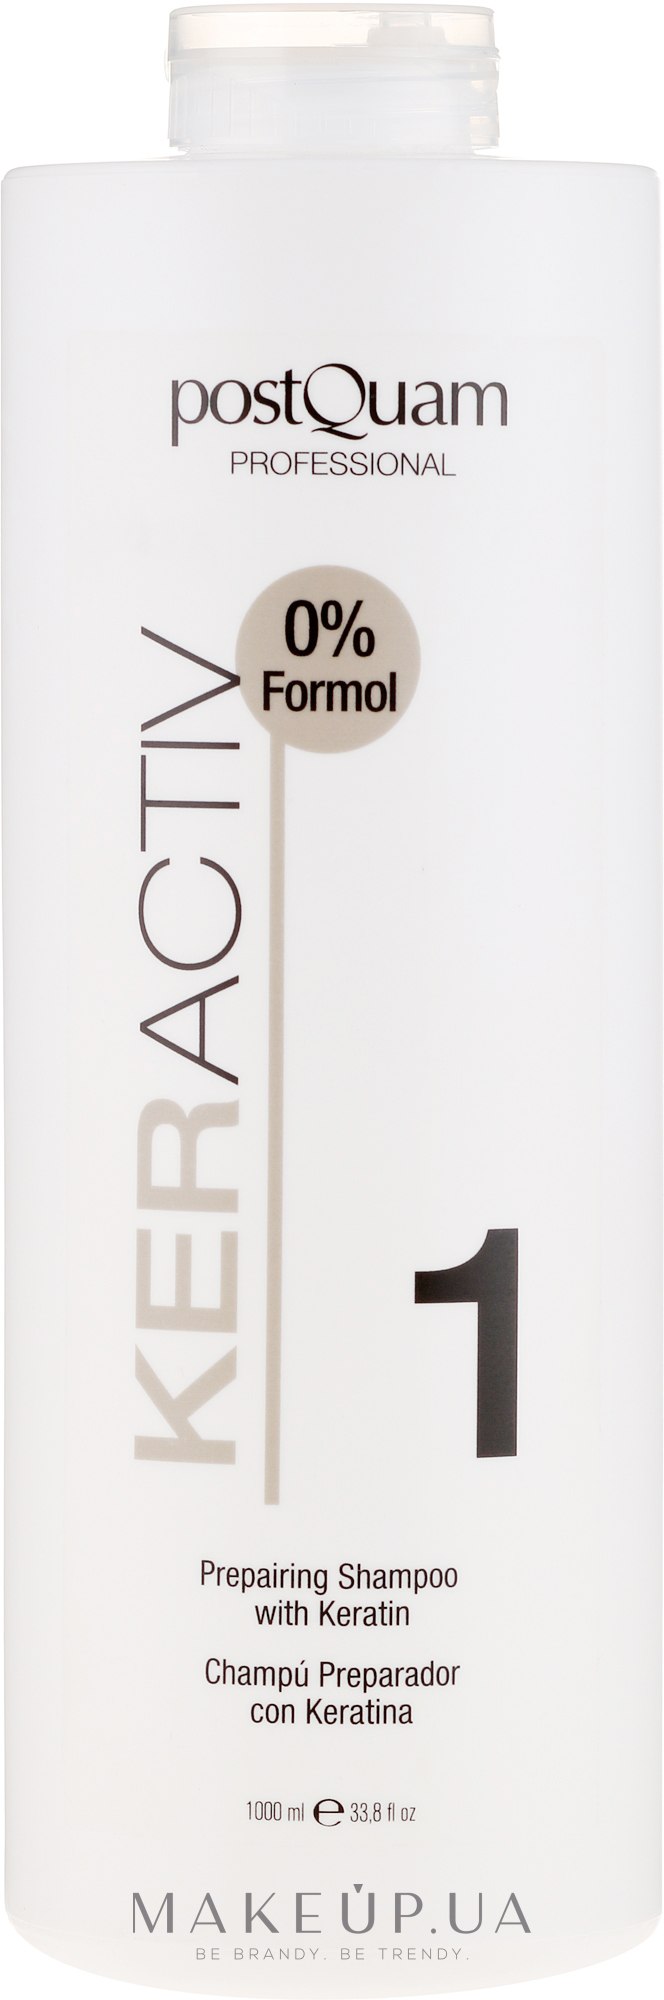 Кератиновый шампунь для применения перед выпрямлением волос - PostQuam Keractiv Prepearing Shampoo With Keratin — фото 1000ml